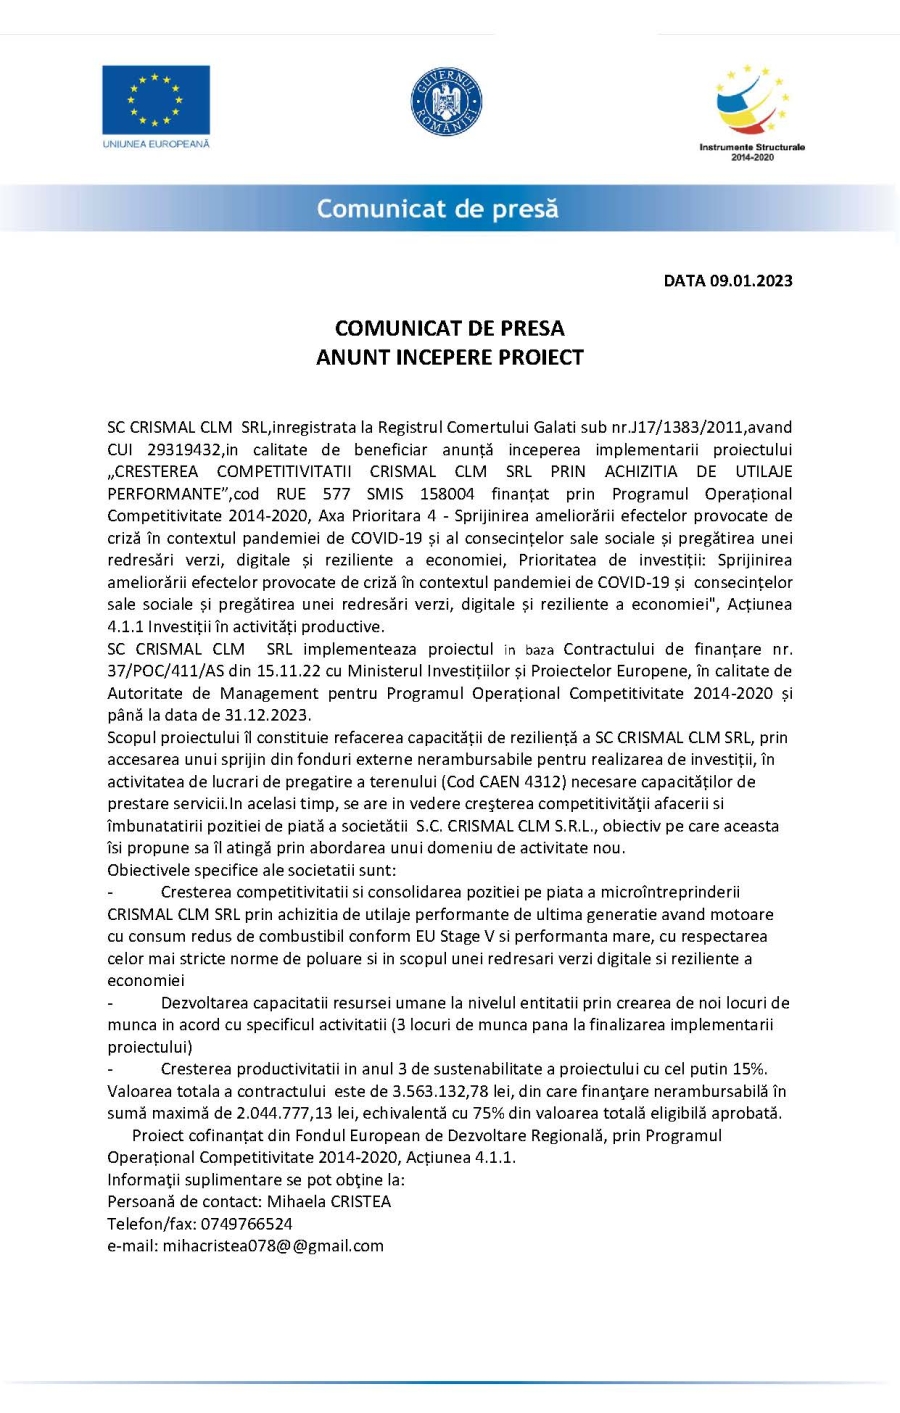 COMUNICAT DE PRESA ANUNT INCEPERE PROIECT DATA 09.01.2023